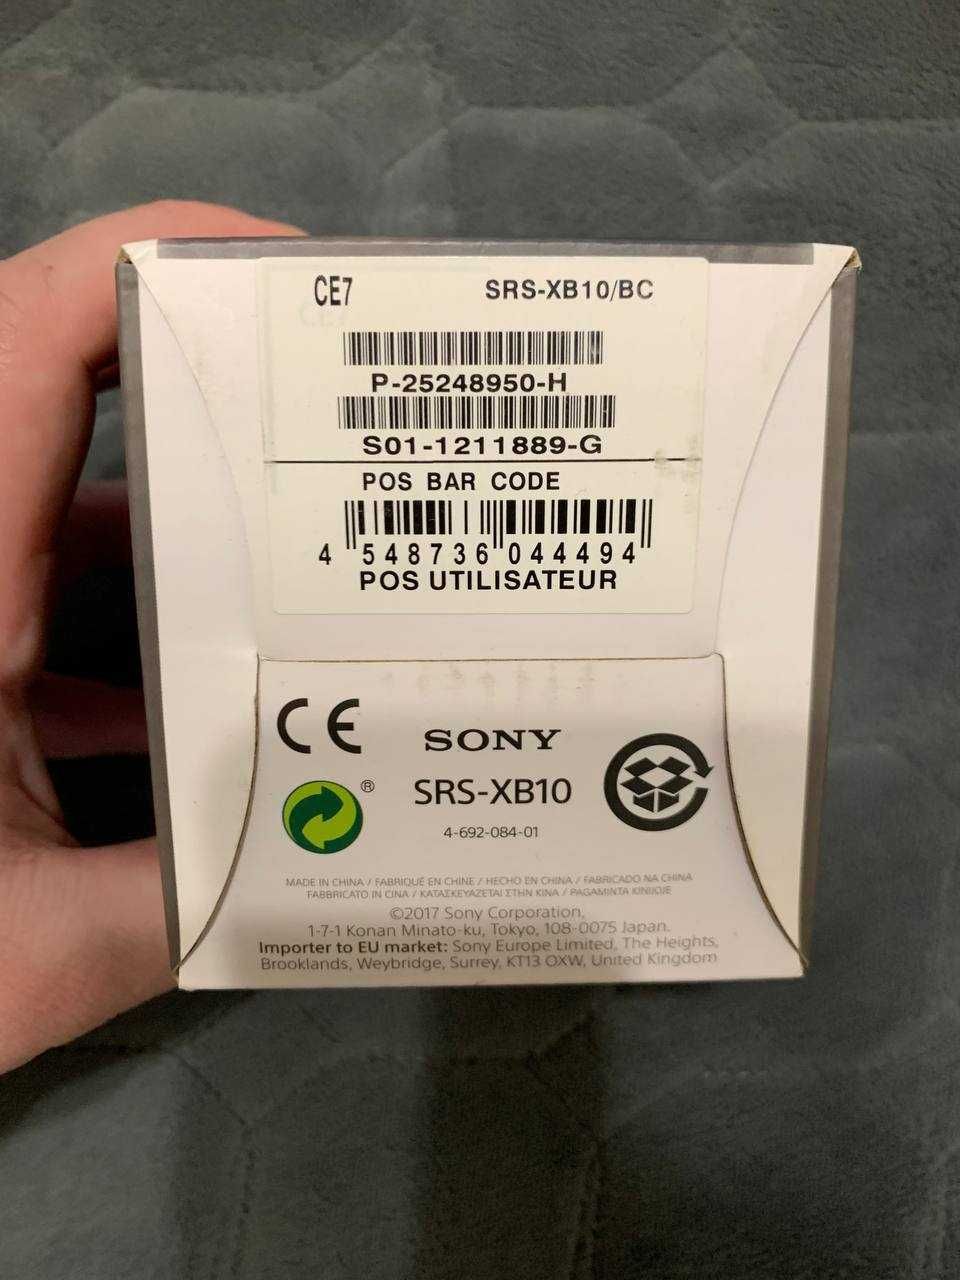 Портативна колонка Sony SRS-XB10, водозахищена